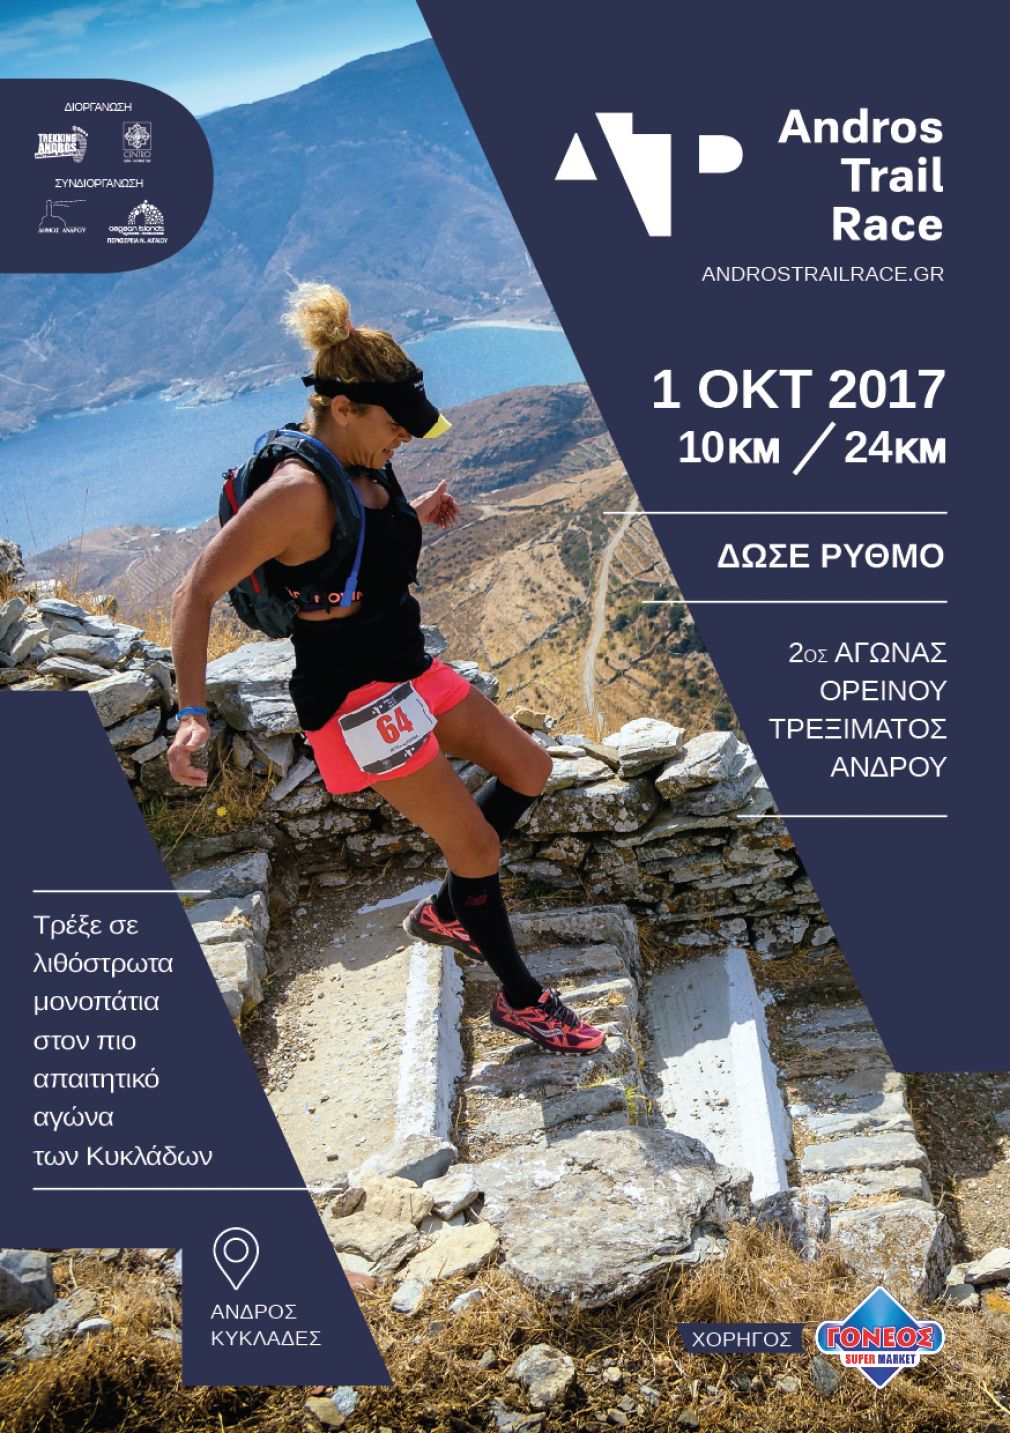 Προκήρυξη 2ου Αγώνα Ορεινού Τρεξίματος Άνδρου 2017 Andros Trail Race 2017